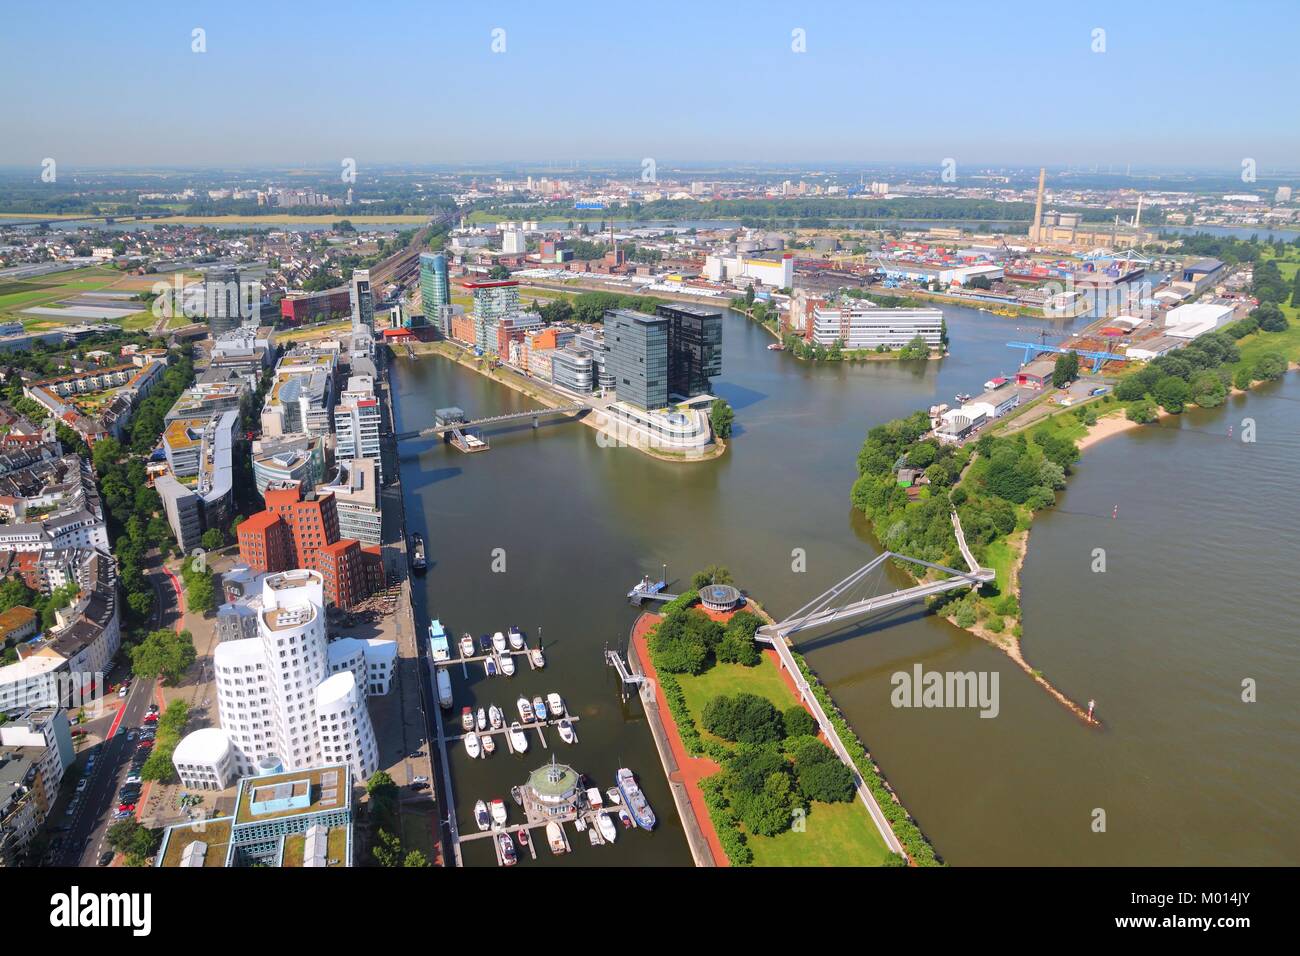 Düsseldorf - Stadt in Nordrhein-Westfalen. Teil des Ruhrgebietes. Luftbild mit Hafen (Hafenstadt) Bezirk am Rhein. Stockfoto